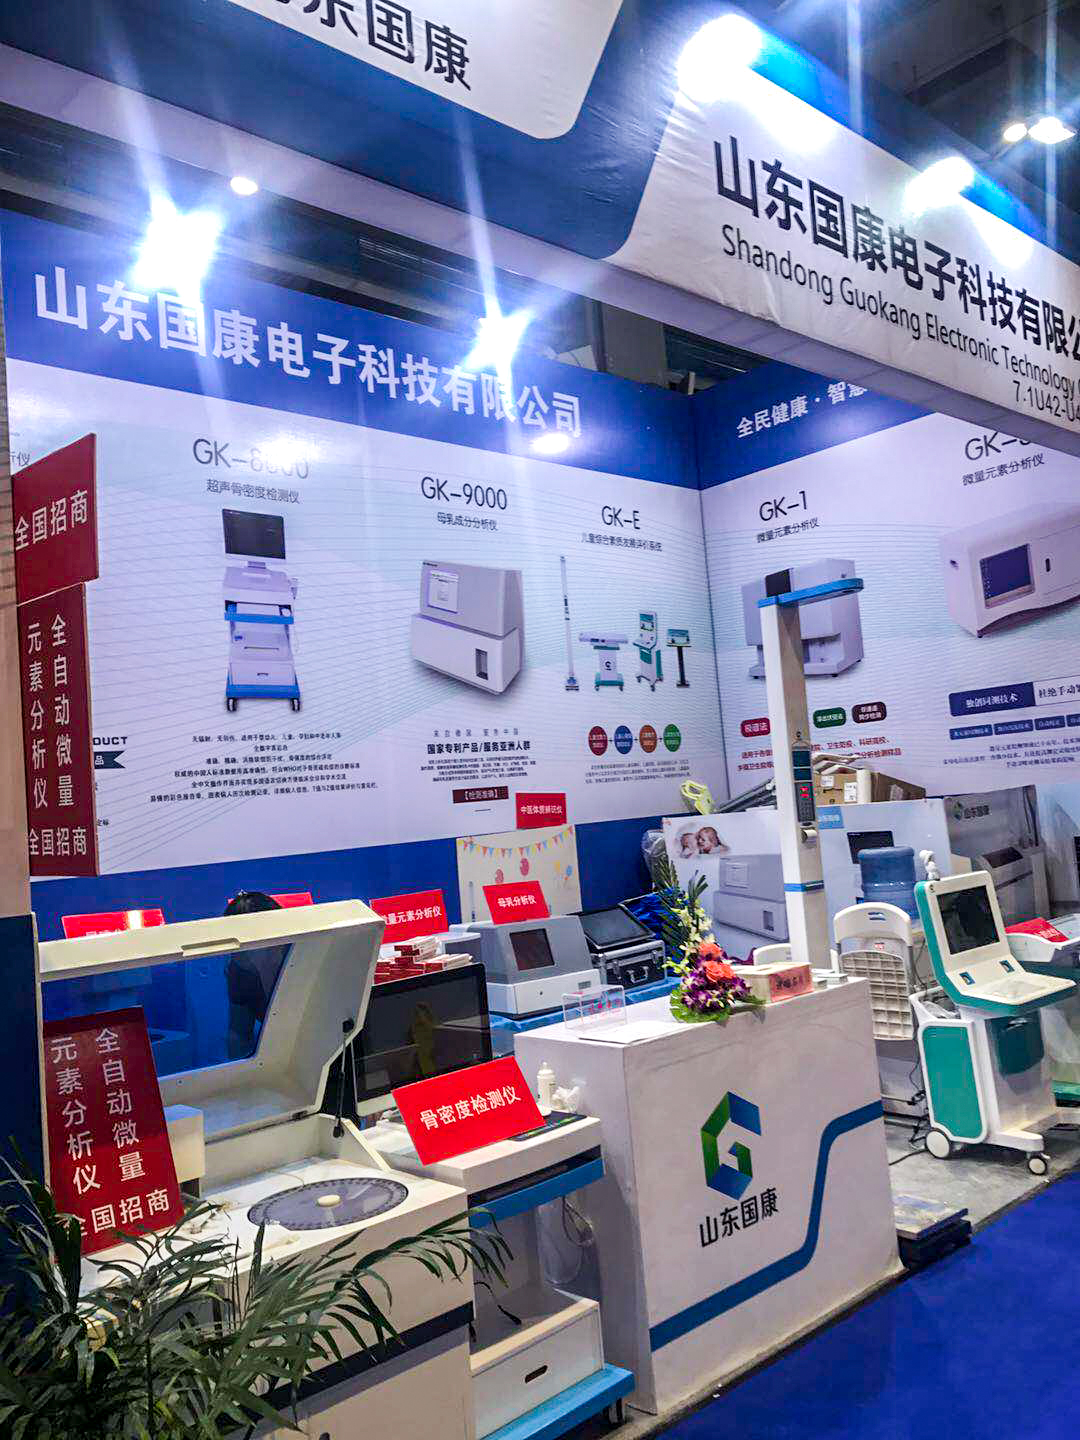 微量元素分析仪厂家山东国康参加28届中国国际医疗器械设计与制造技术博览会